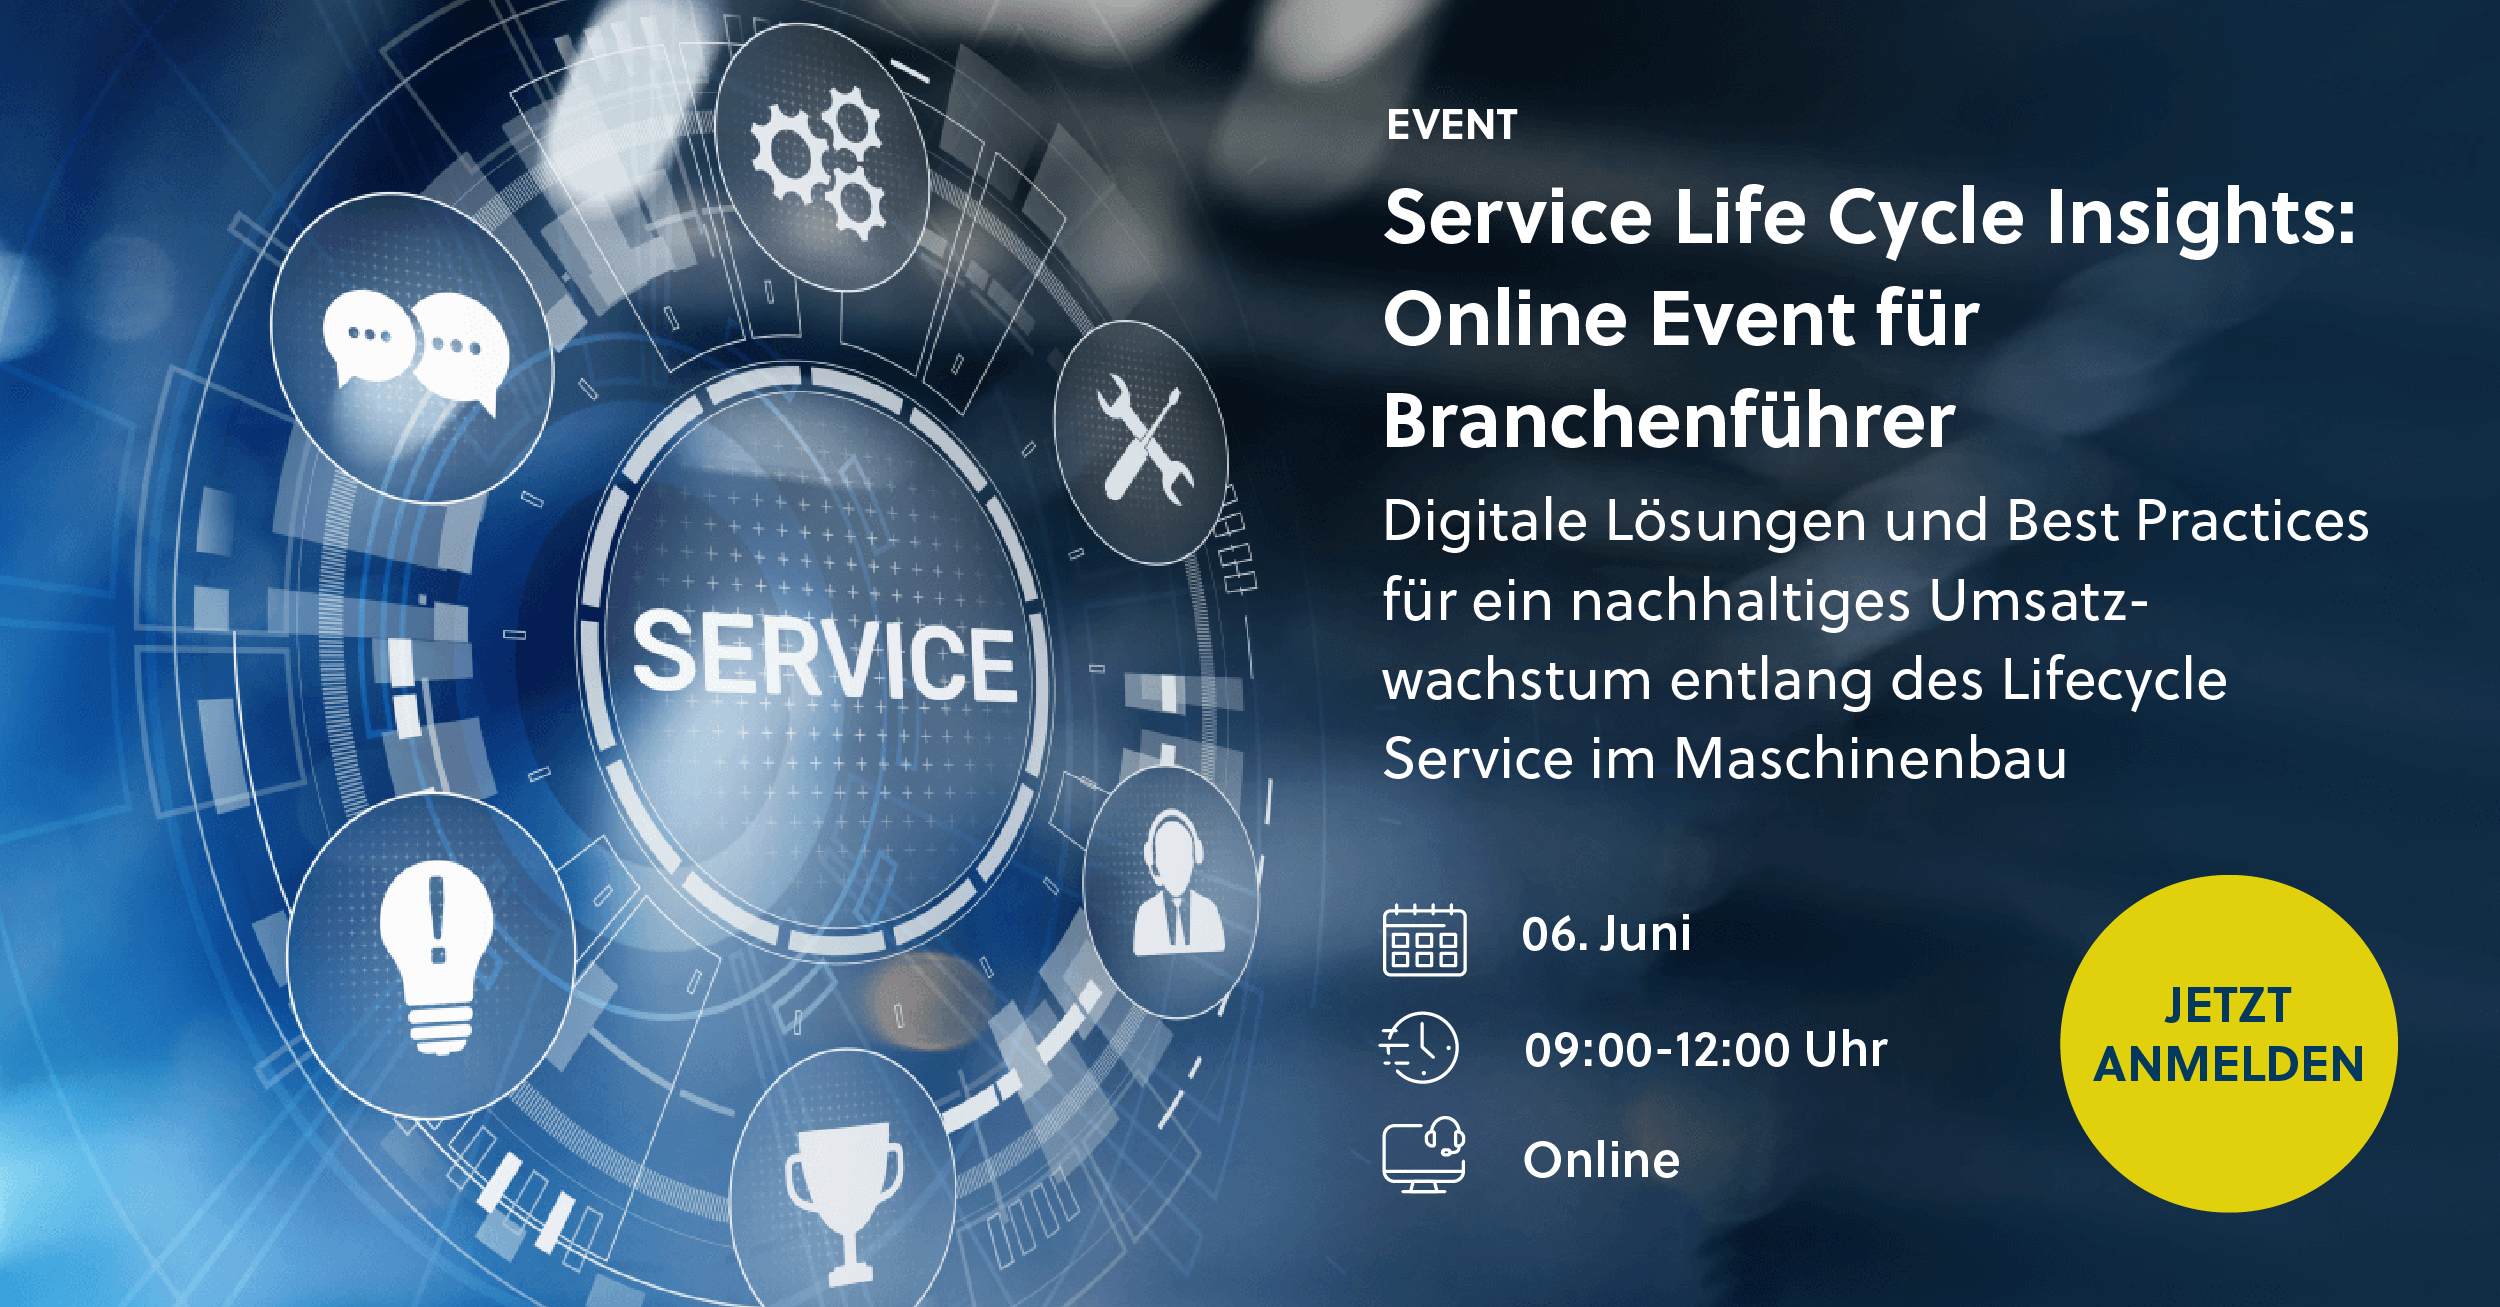 Service Life Cycle Insights: Online Event für Branchenführer